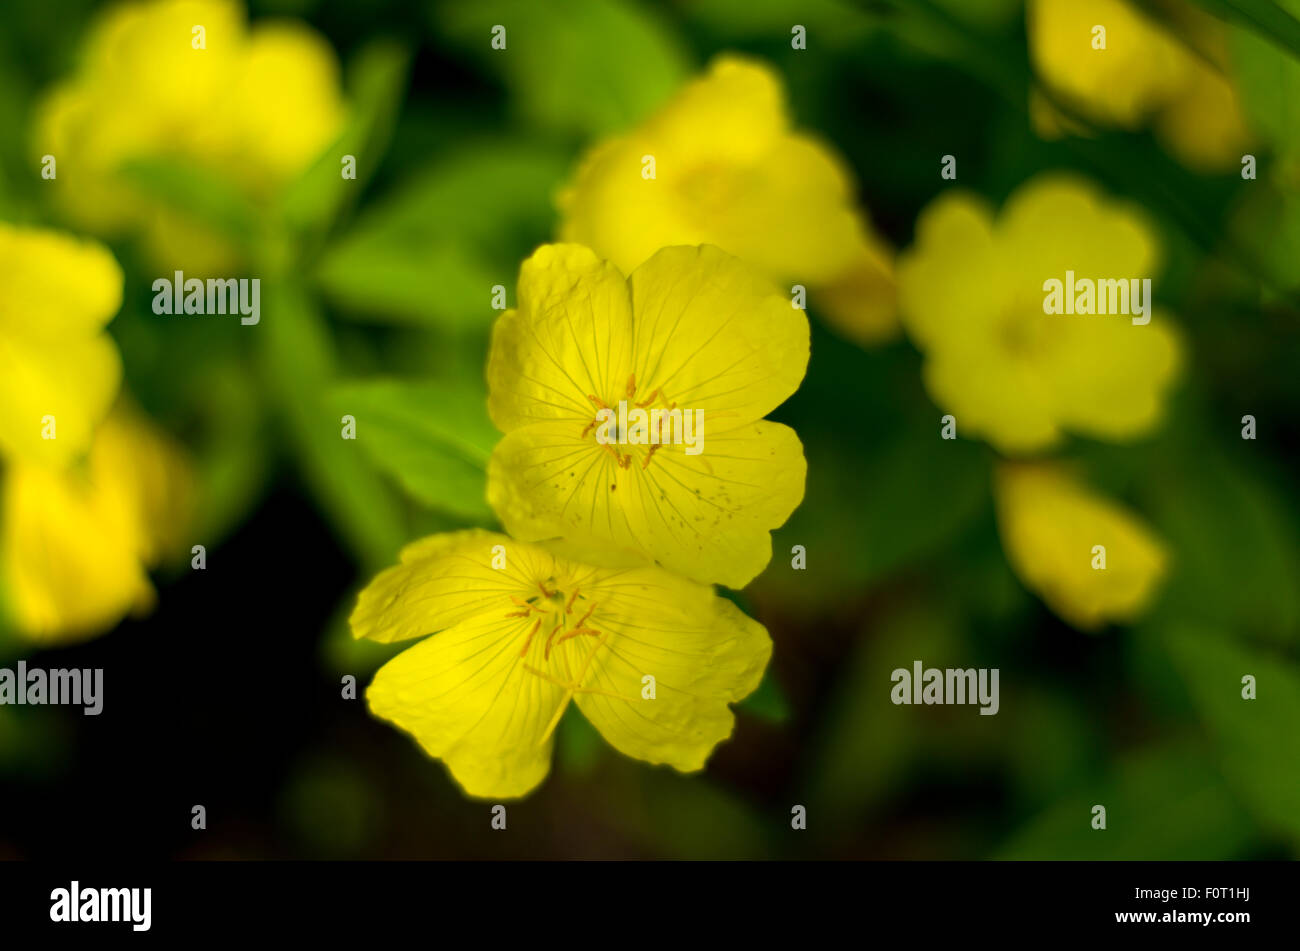 Evening primrose (Oenothera) Stock Photo